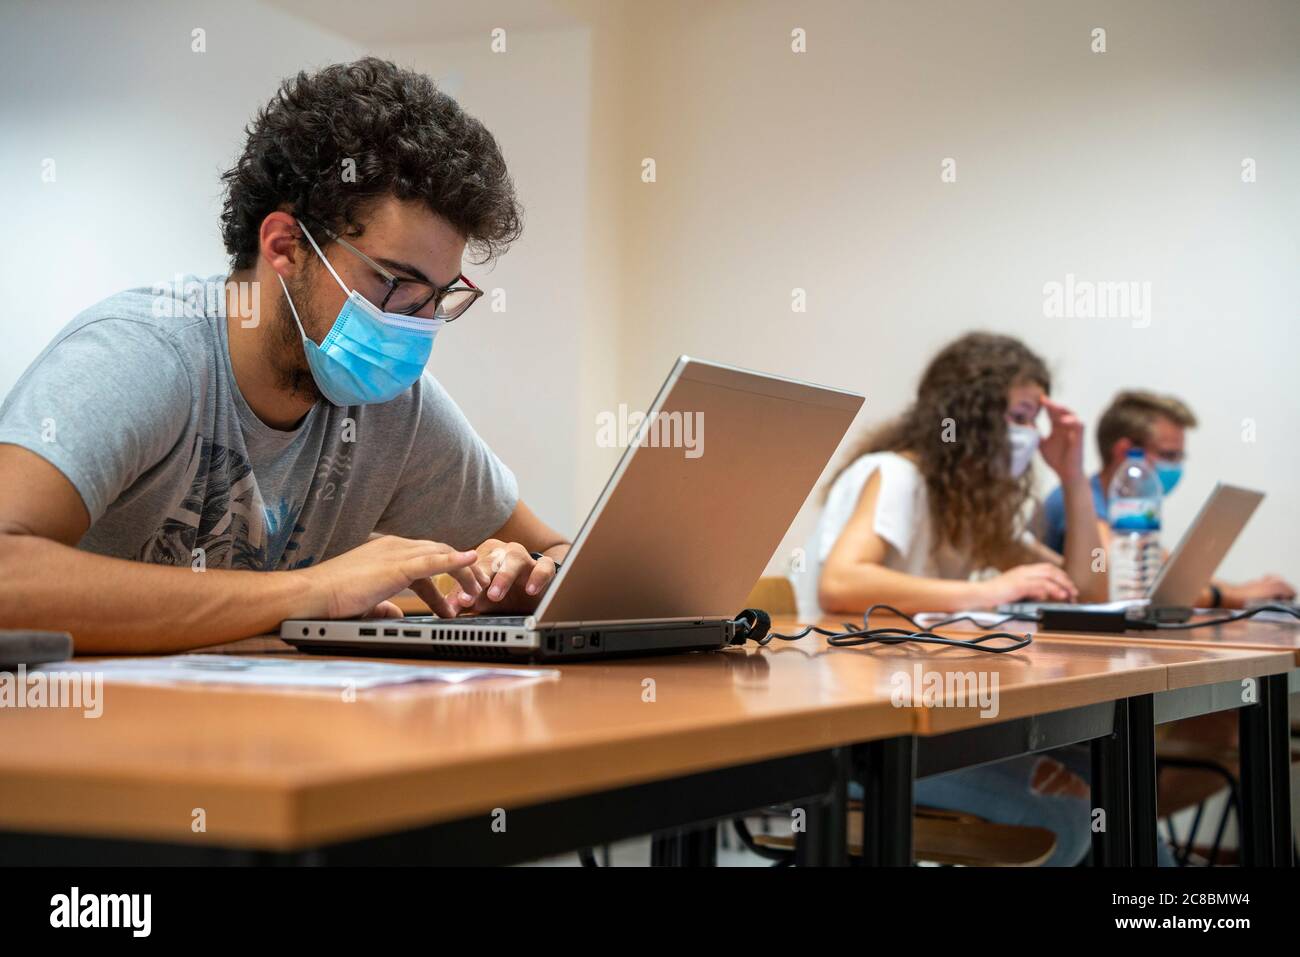 Les élèves portant des masques faciaux en classe pendant la nouvelle pandémie de coronavirus COVID-19 Banque D'Images